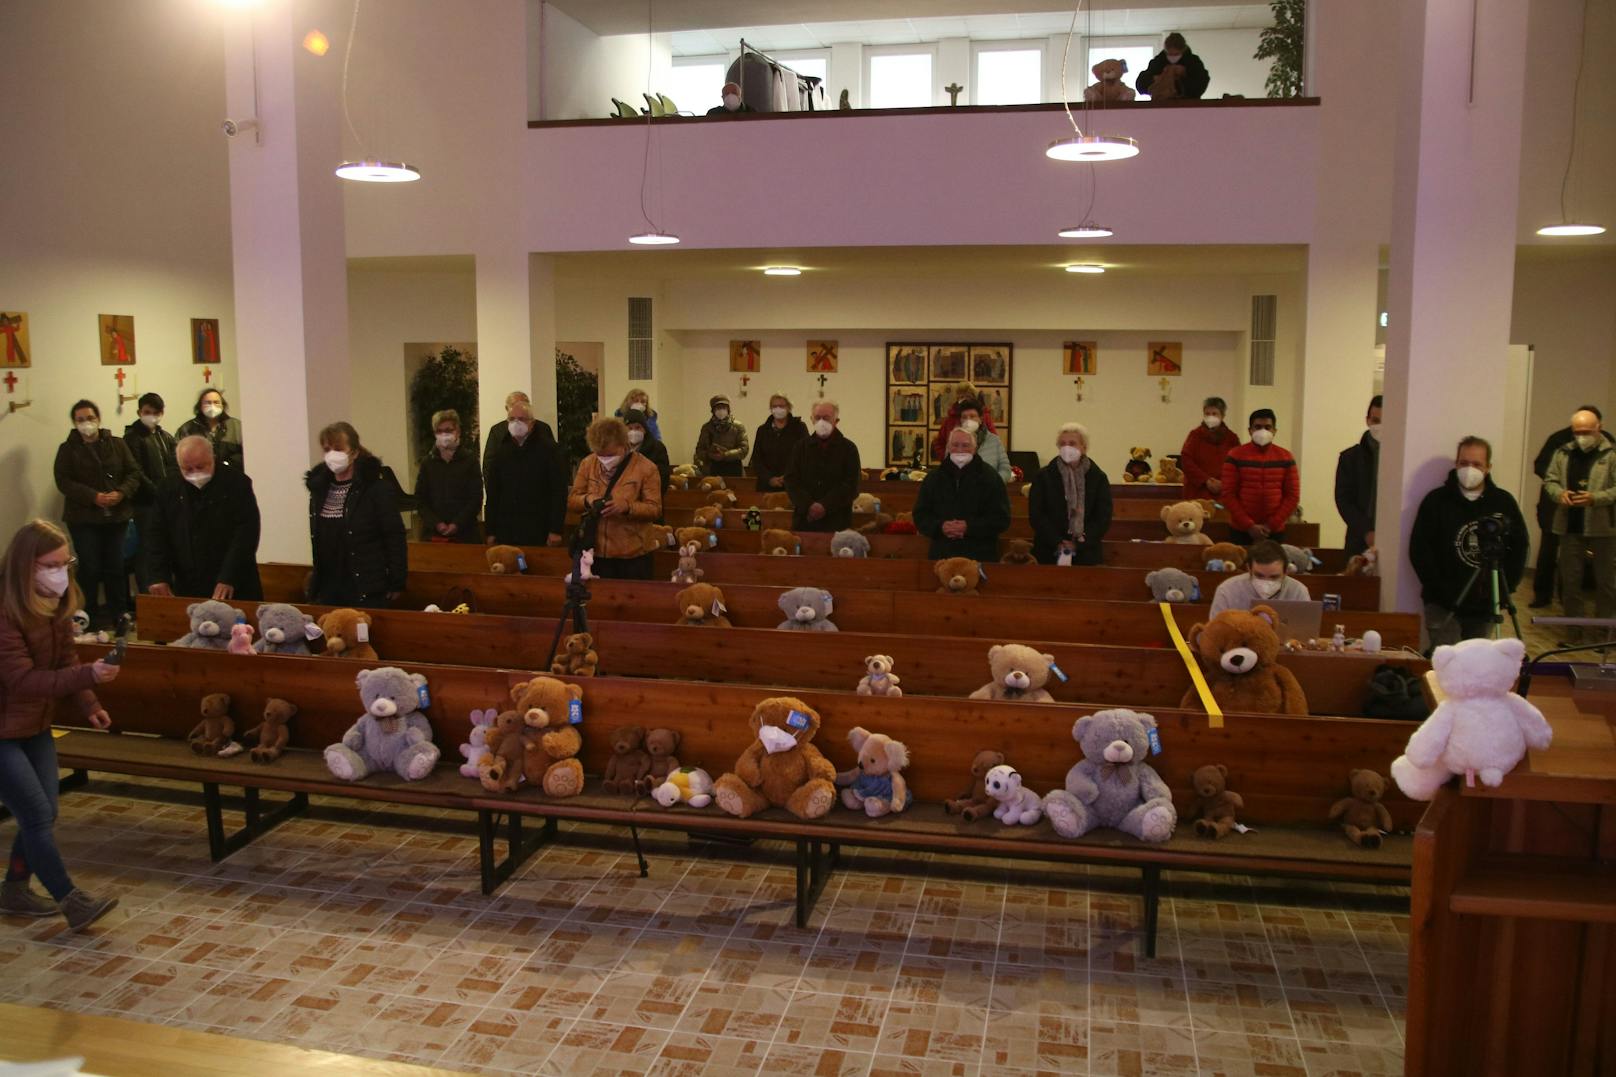 Gläubige brachten am Sonntag 150 Plüschbären mit in die Kirche in Wien-Margareten.&nbsp;